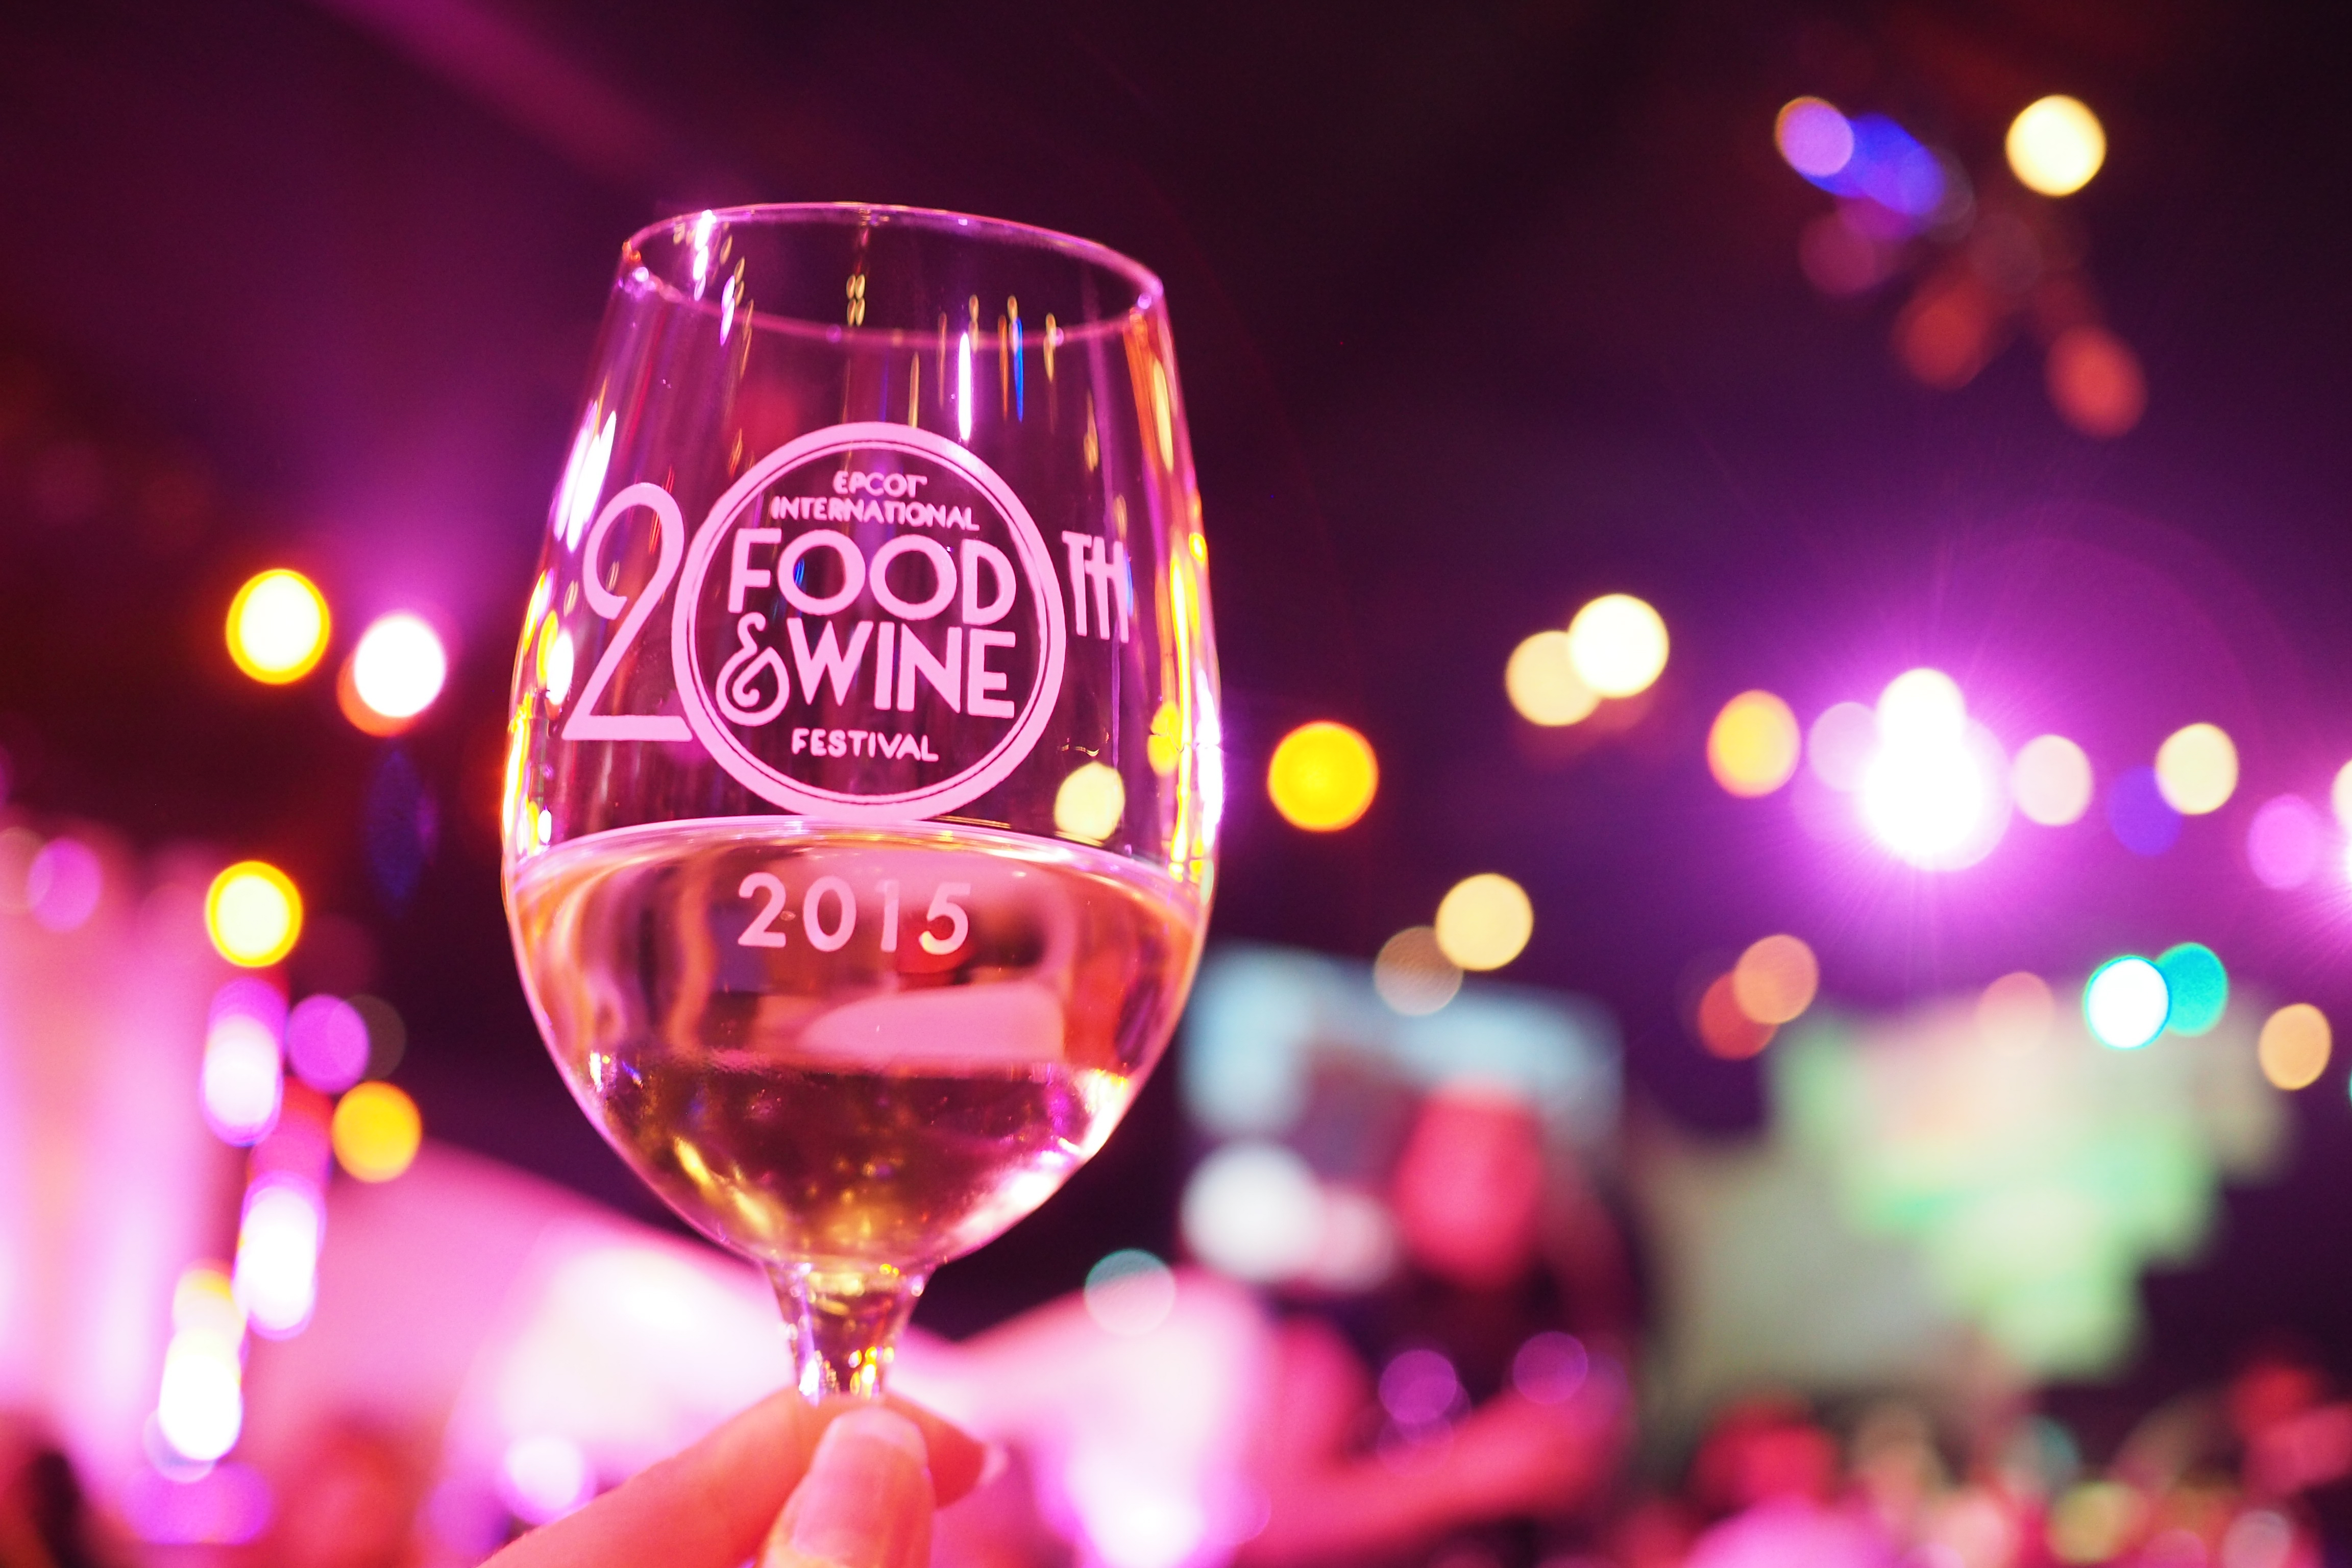 20th Epcot Food & Wine Festival – Sept 25 thru Nov 16 – A Preview